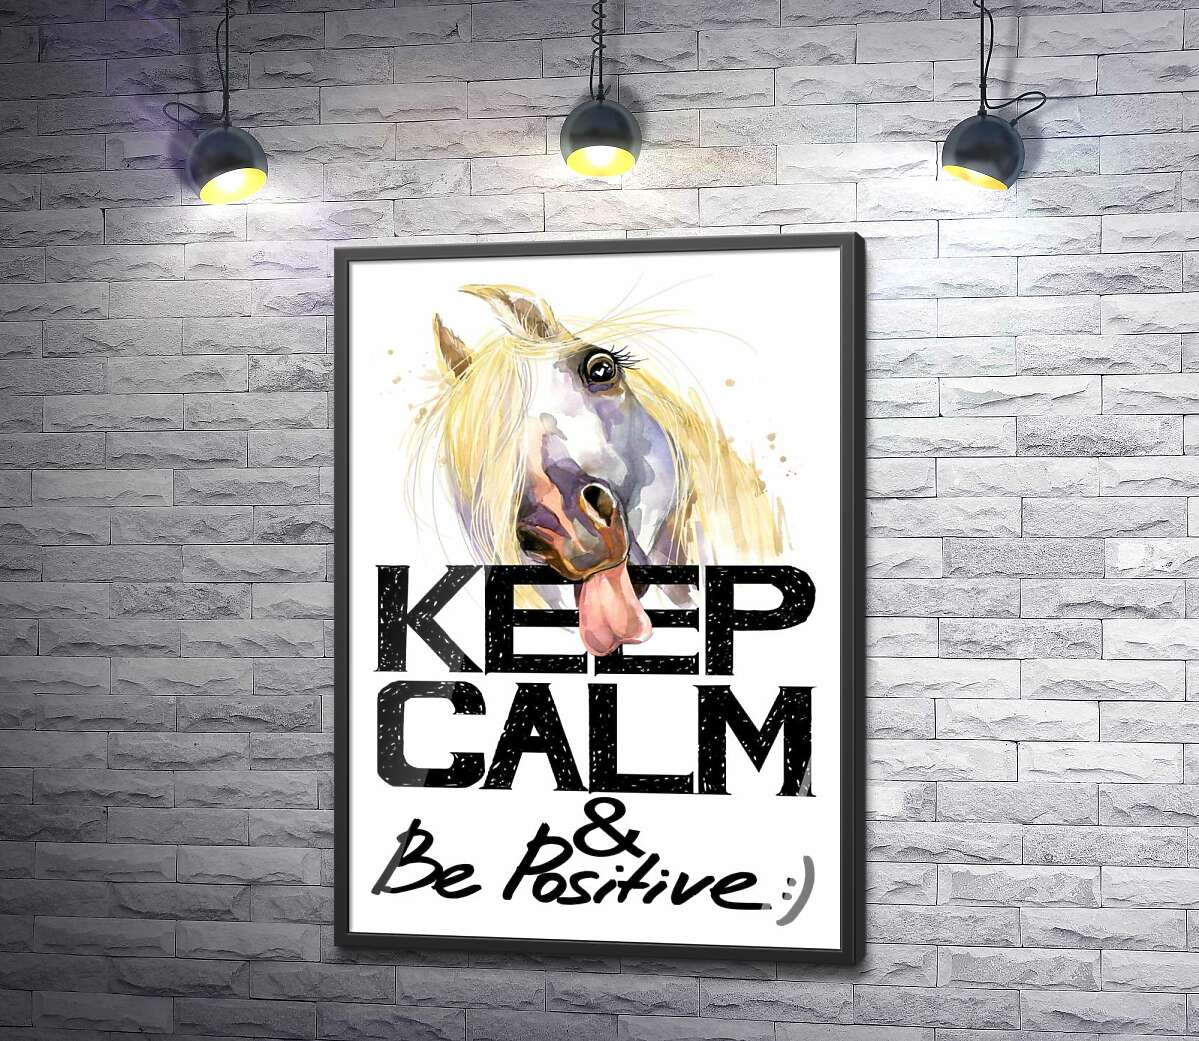 постер Белый конь показывает язык над надписью "keep calm and be positive"